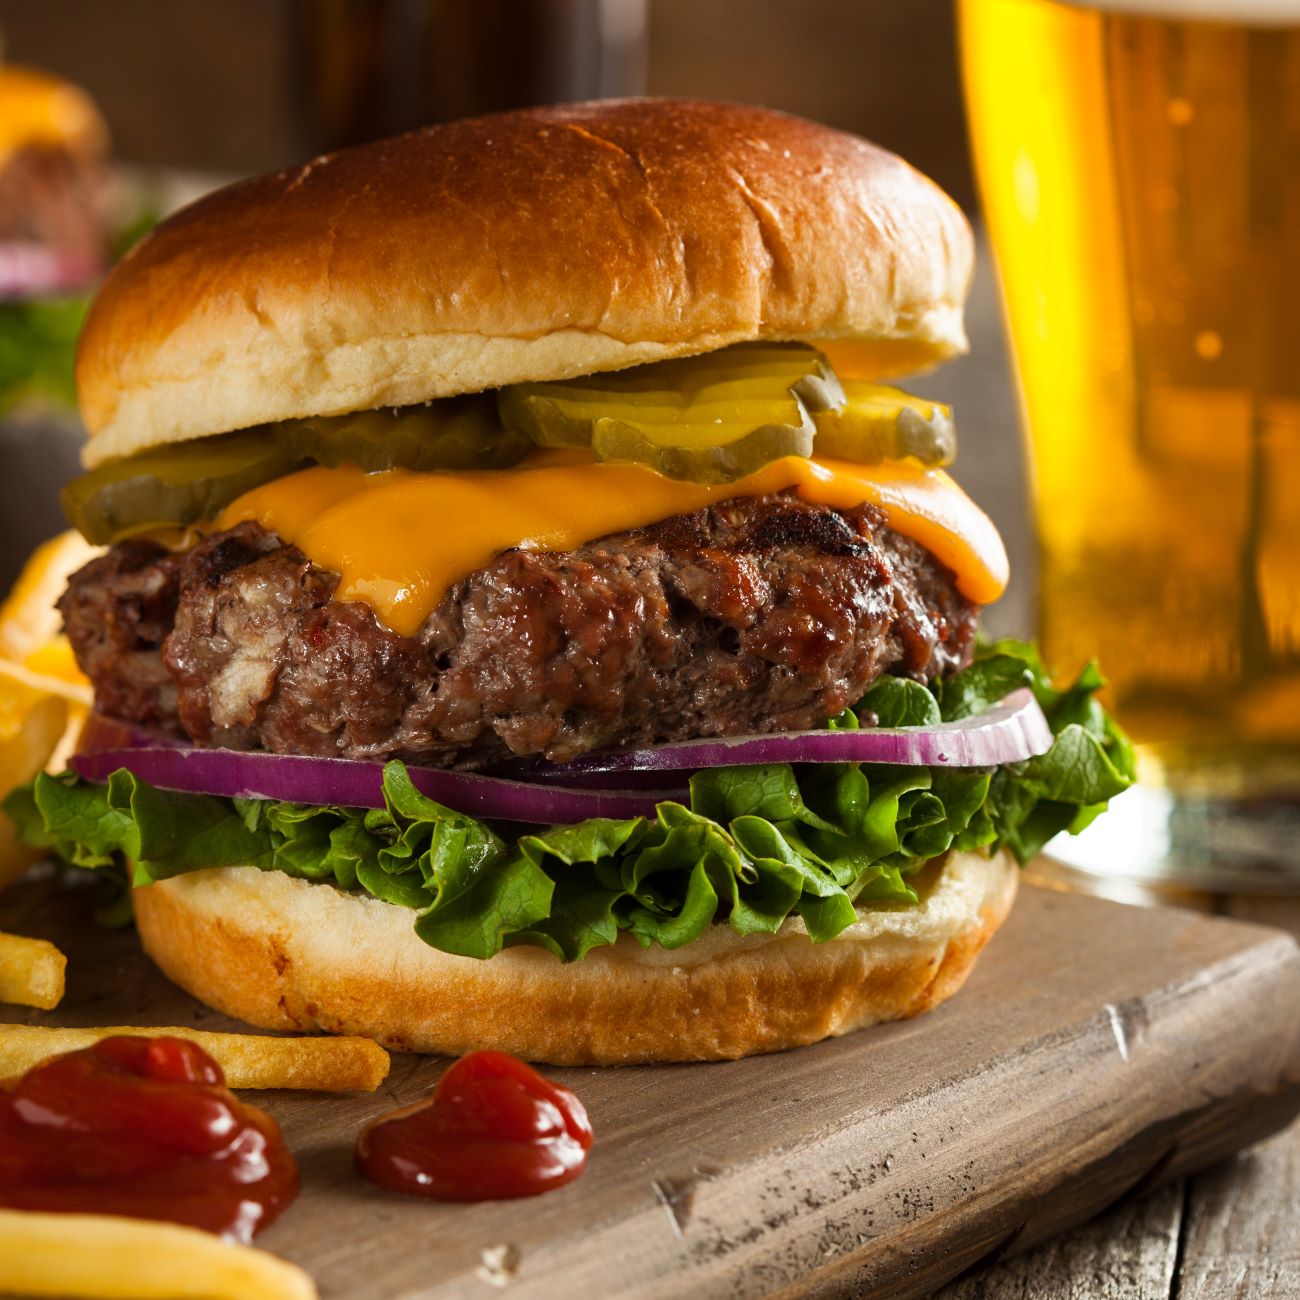 Cheeseburger je prikazan od blizu in s krompirčkom ob strani.